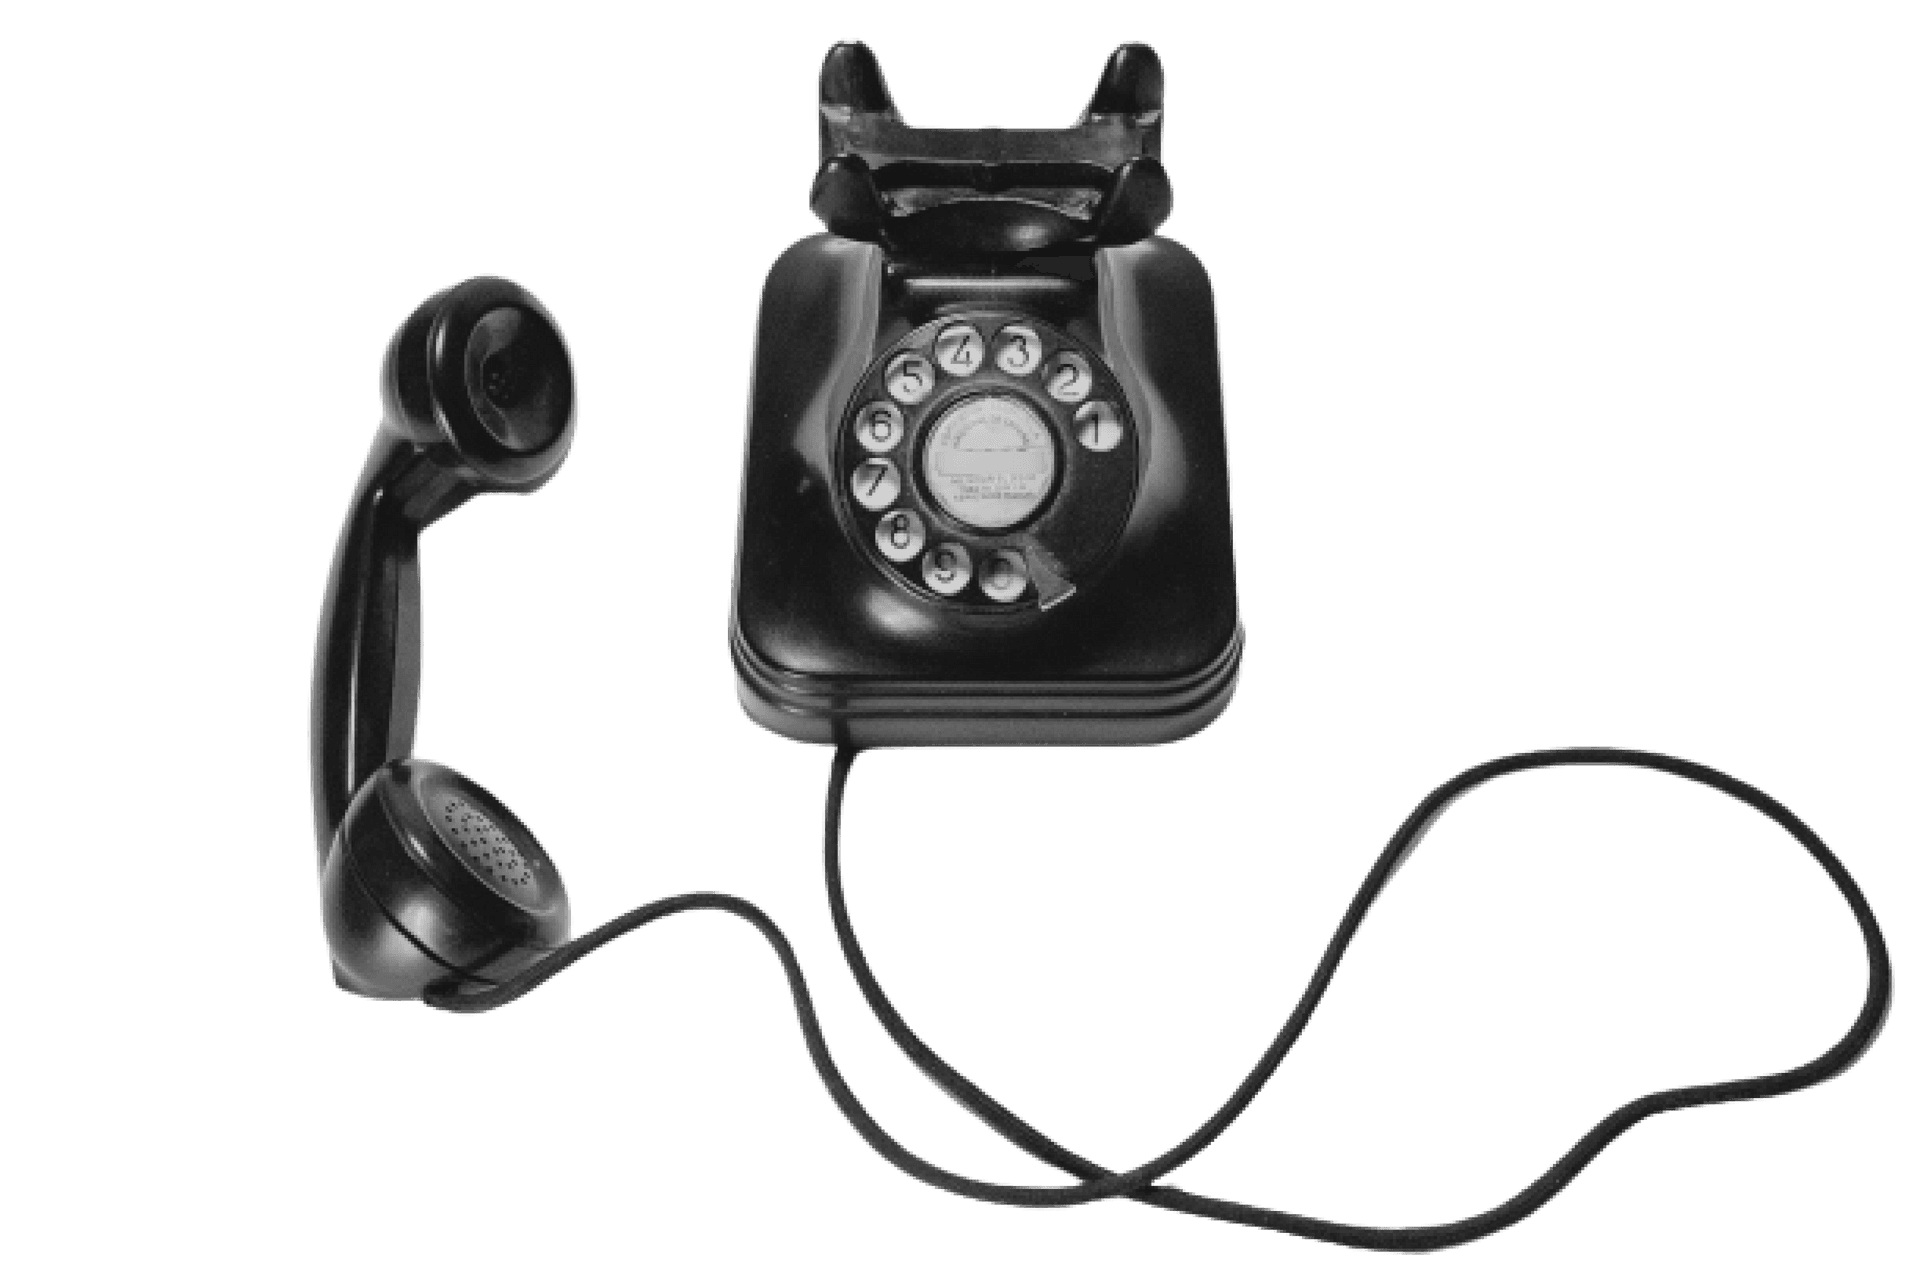 Black retro phone with handset